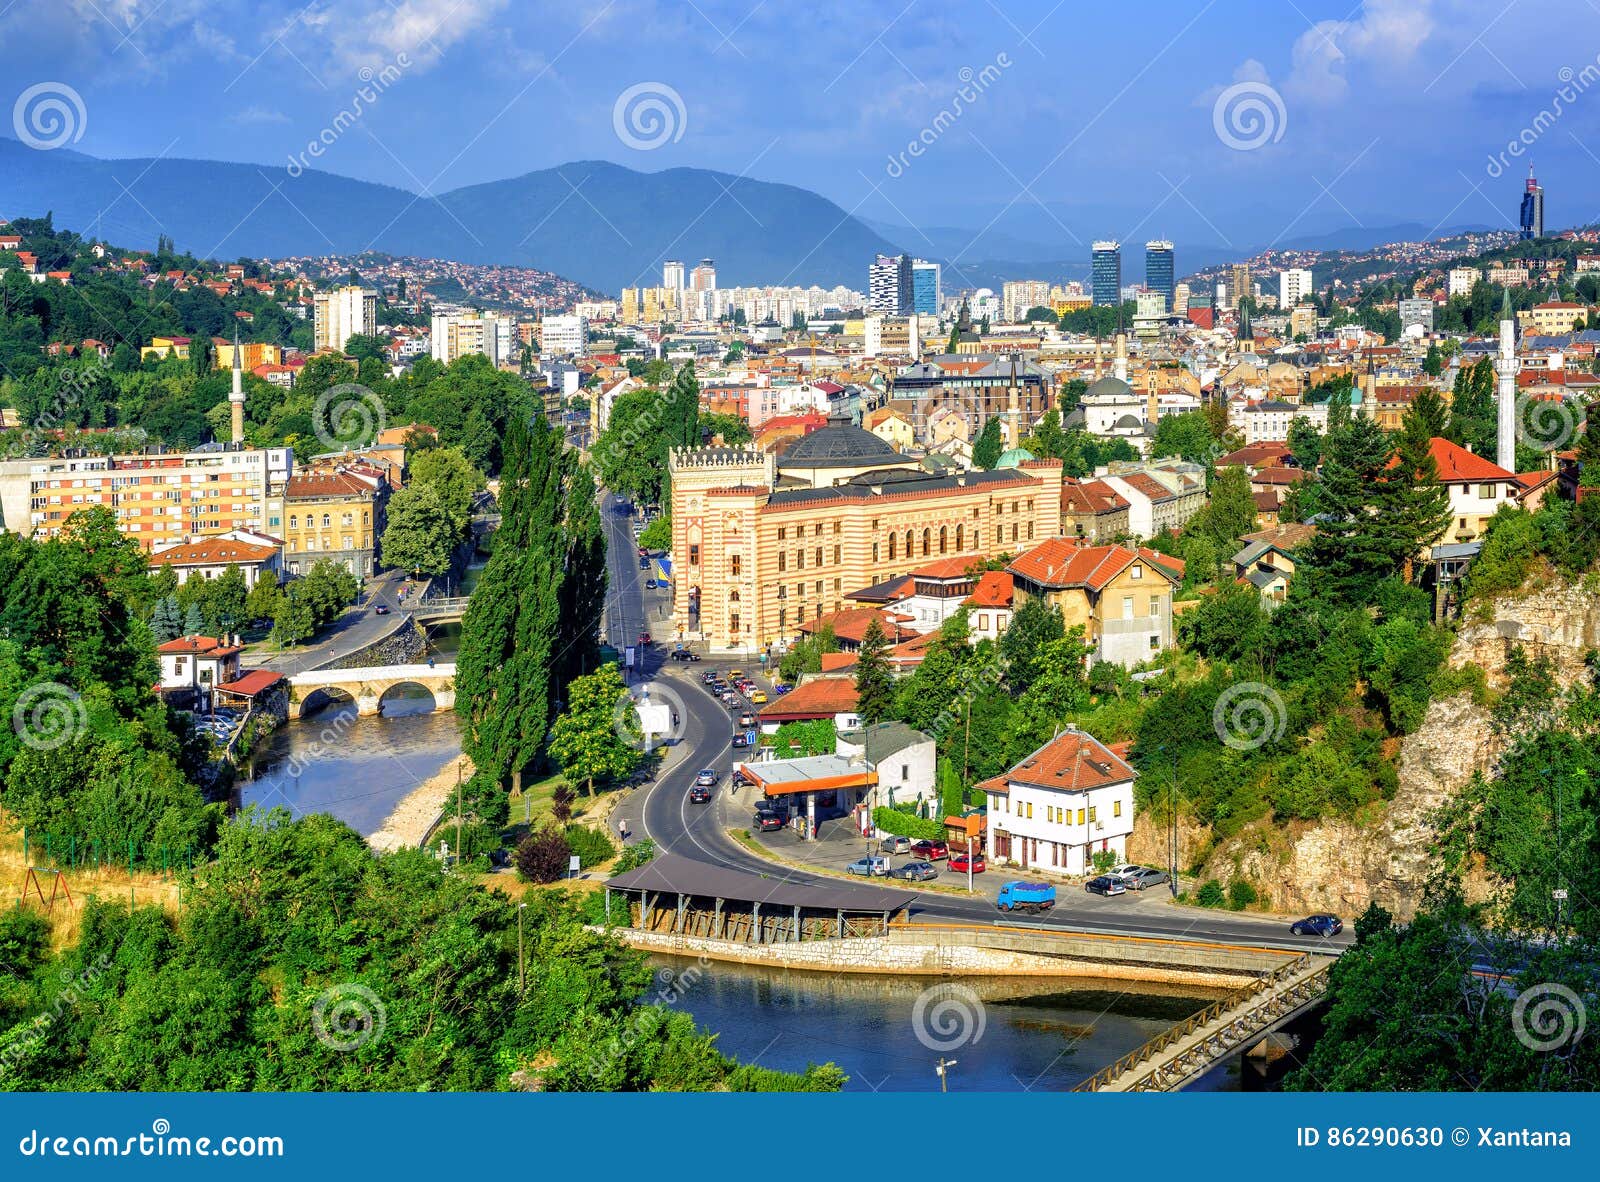 sarajevo city, capital of bosnia and herzegovina